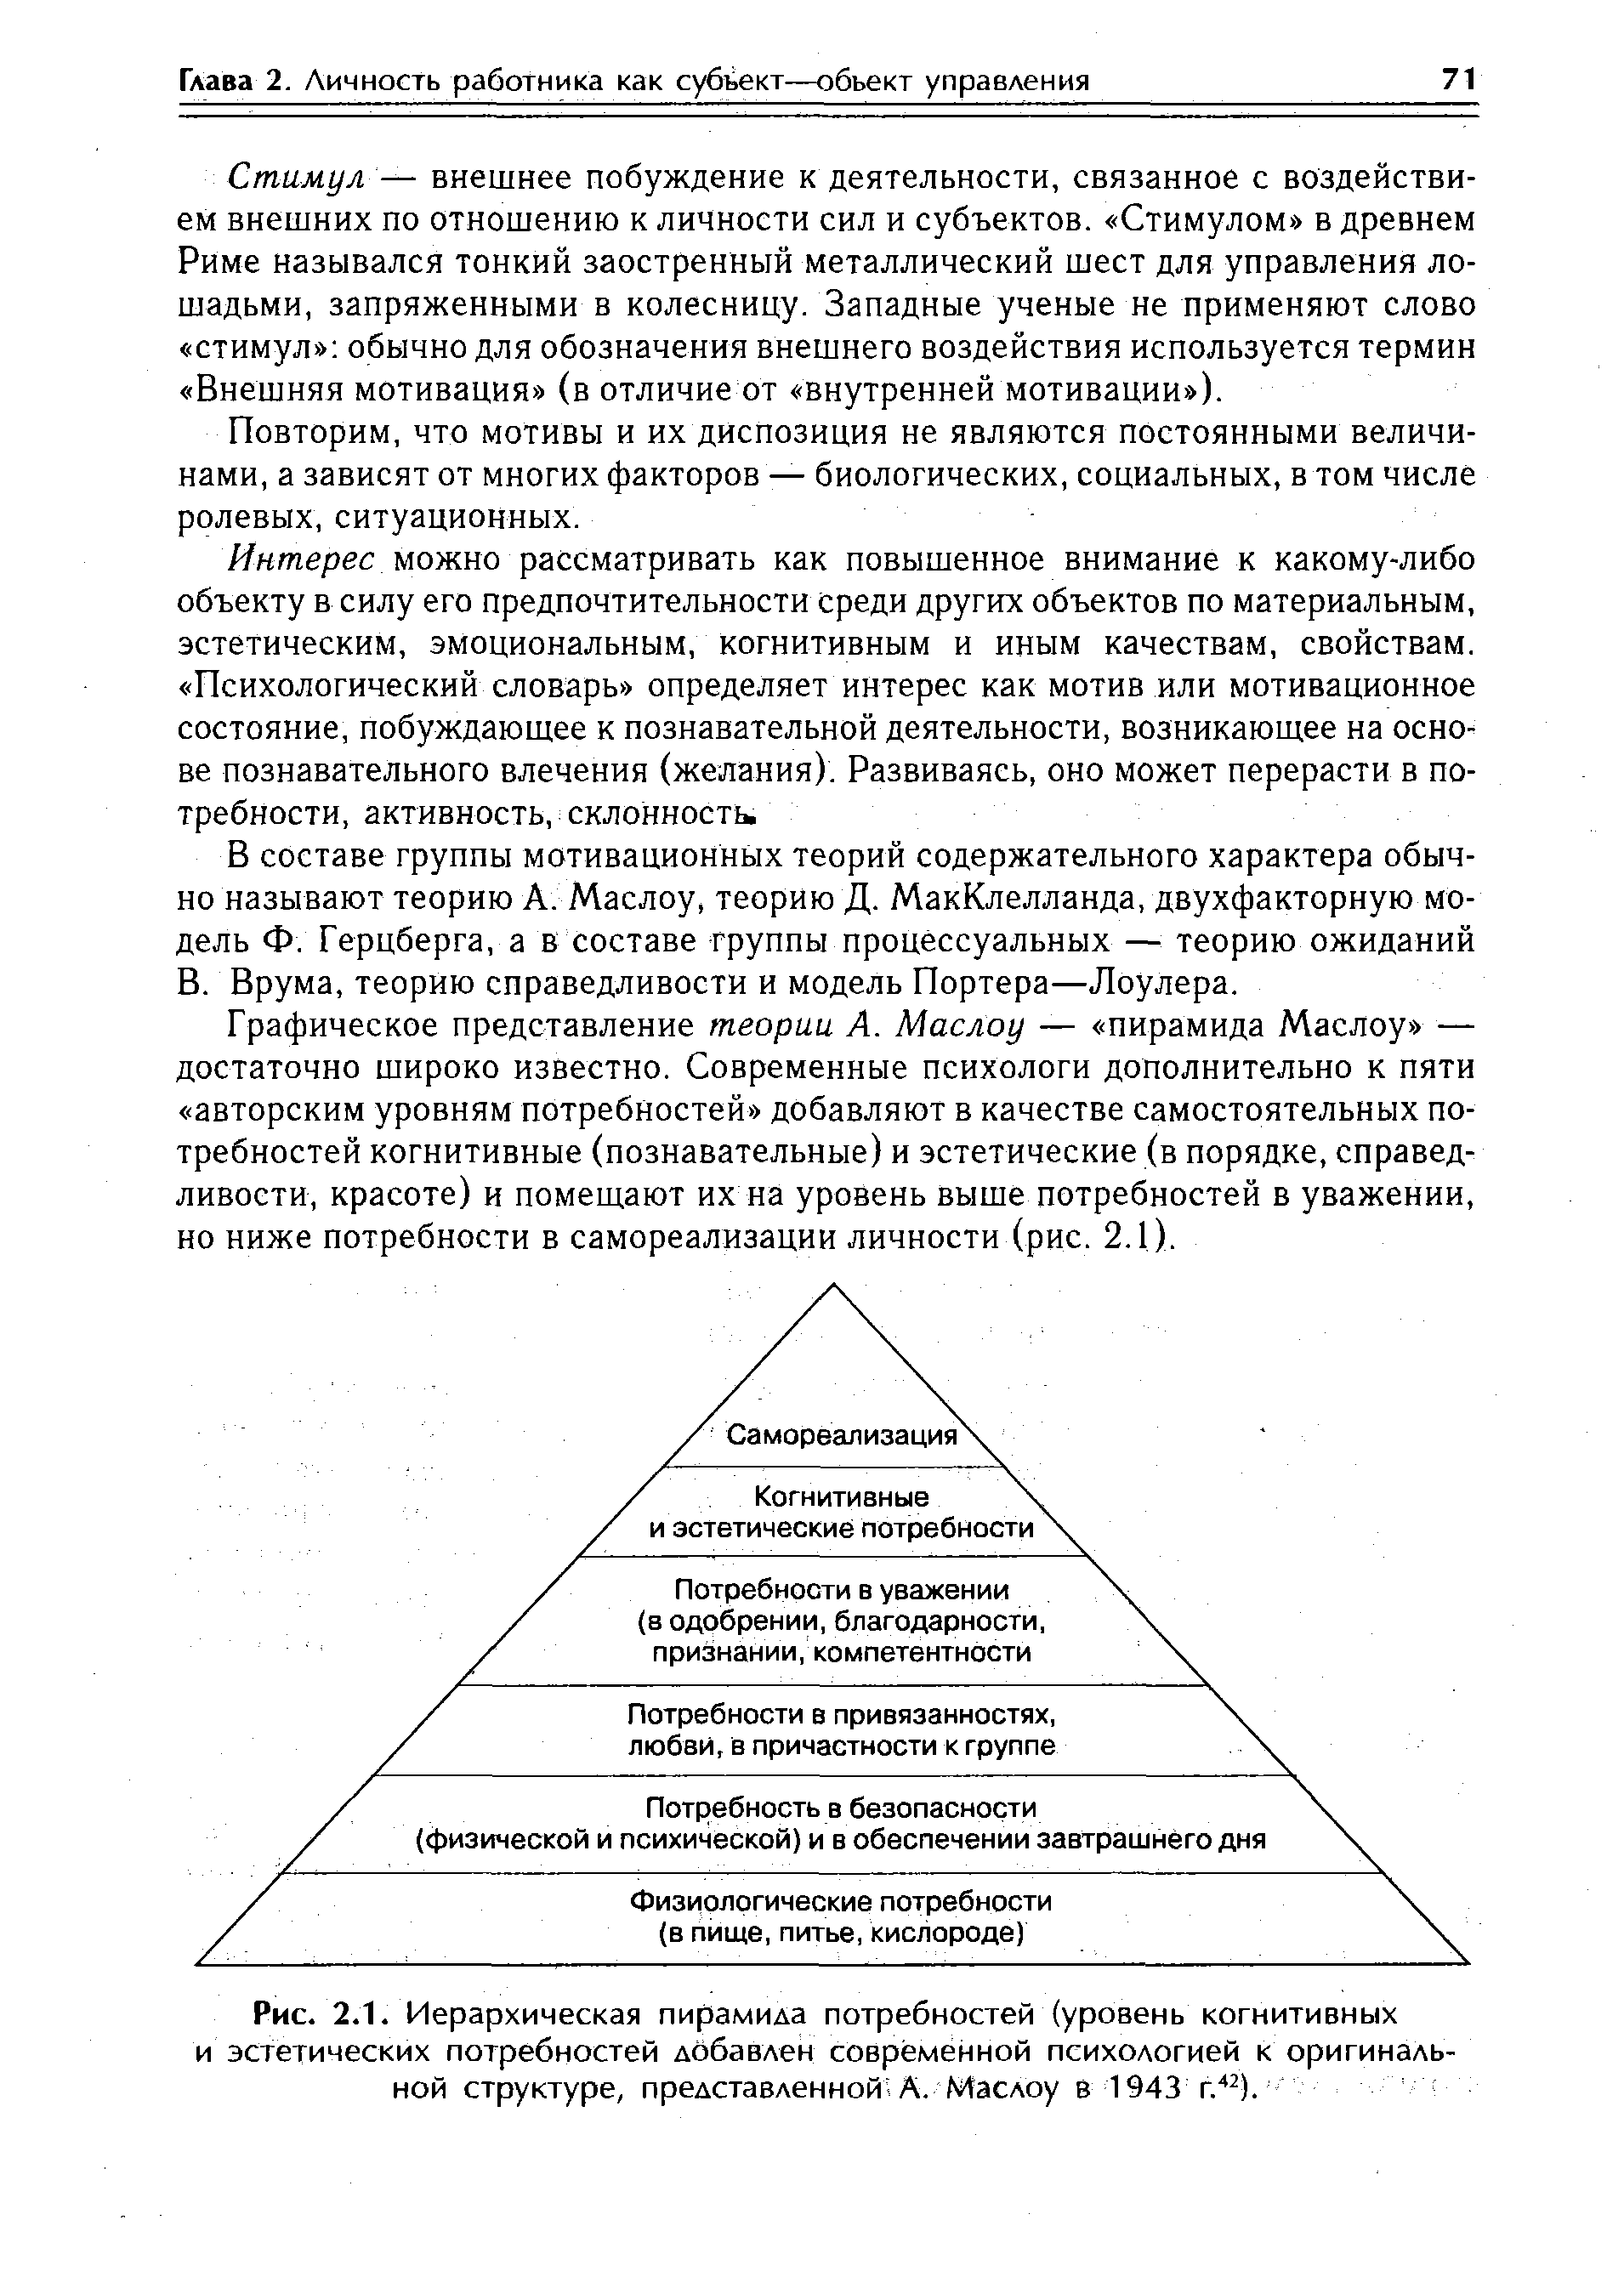 Рис. 2.1. Иерархическая пирамида потребностей (уровень когнитивных и эстетических потребностей добавлен современной психологией к оригинальной структуре, представленной-А. Маслоу в 1943 г.42).
